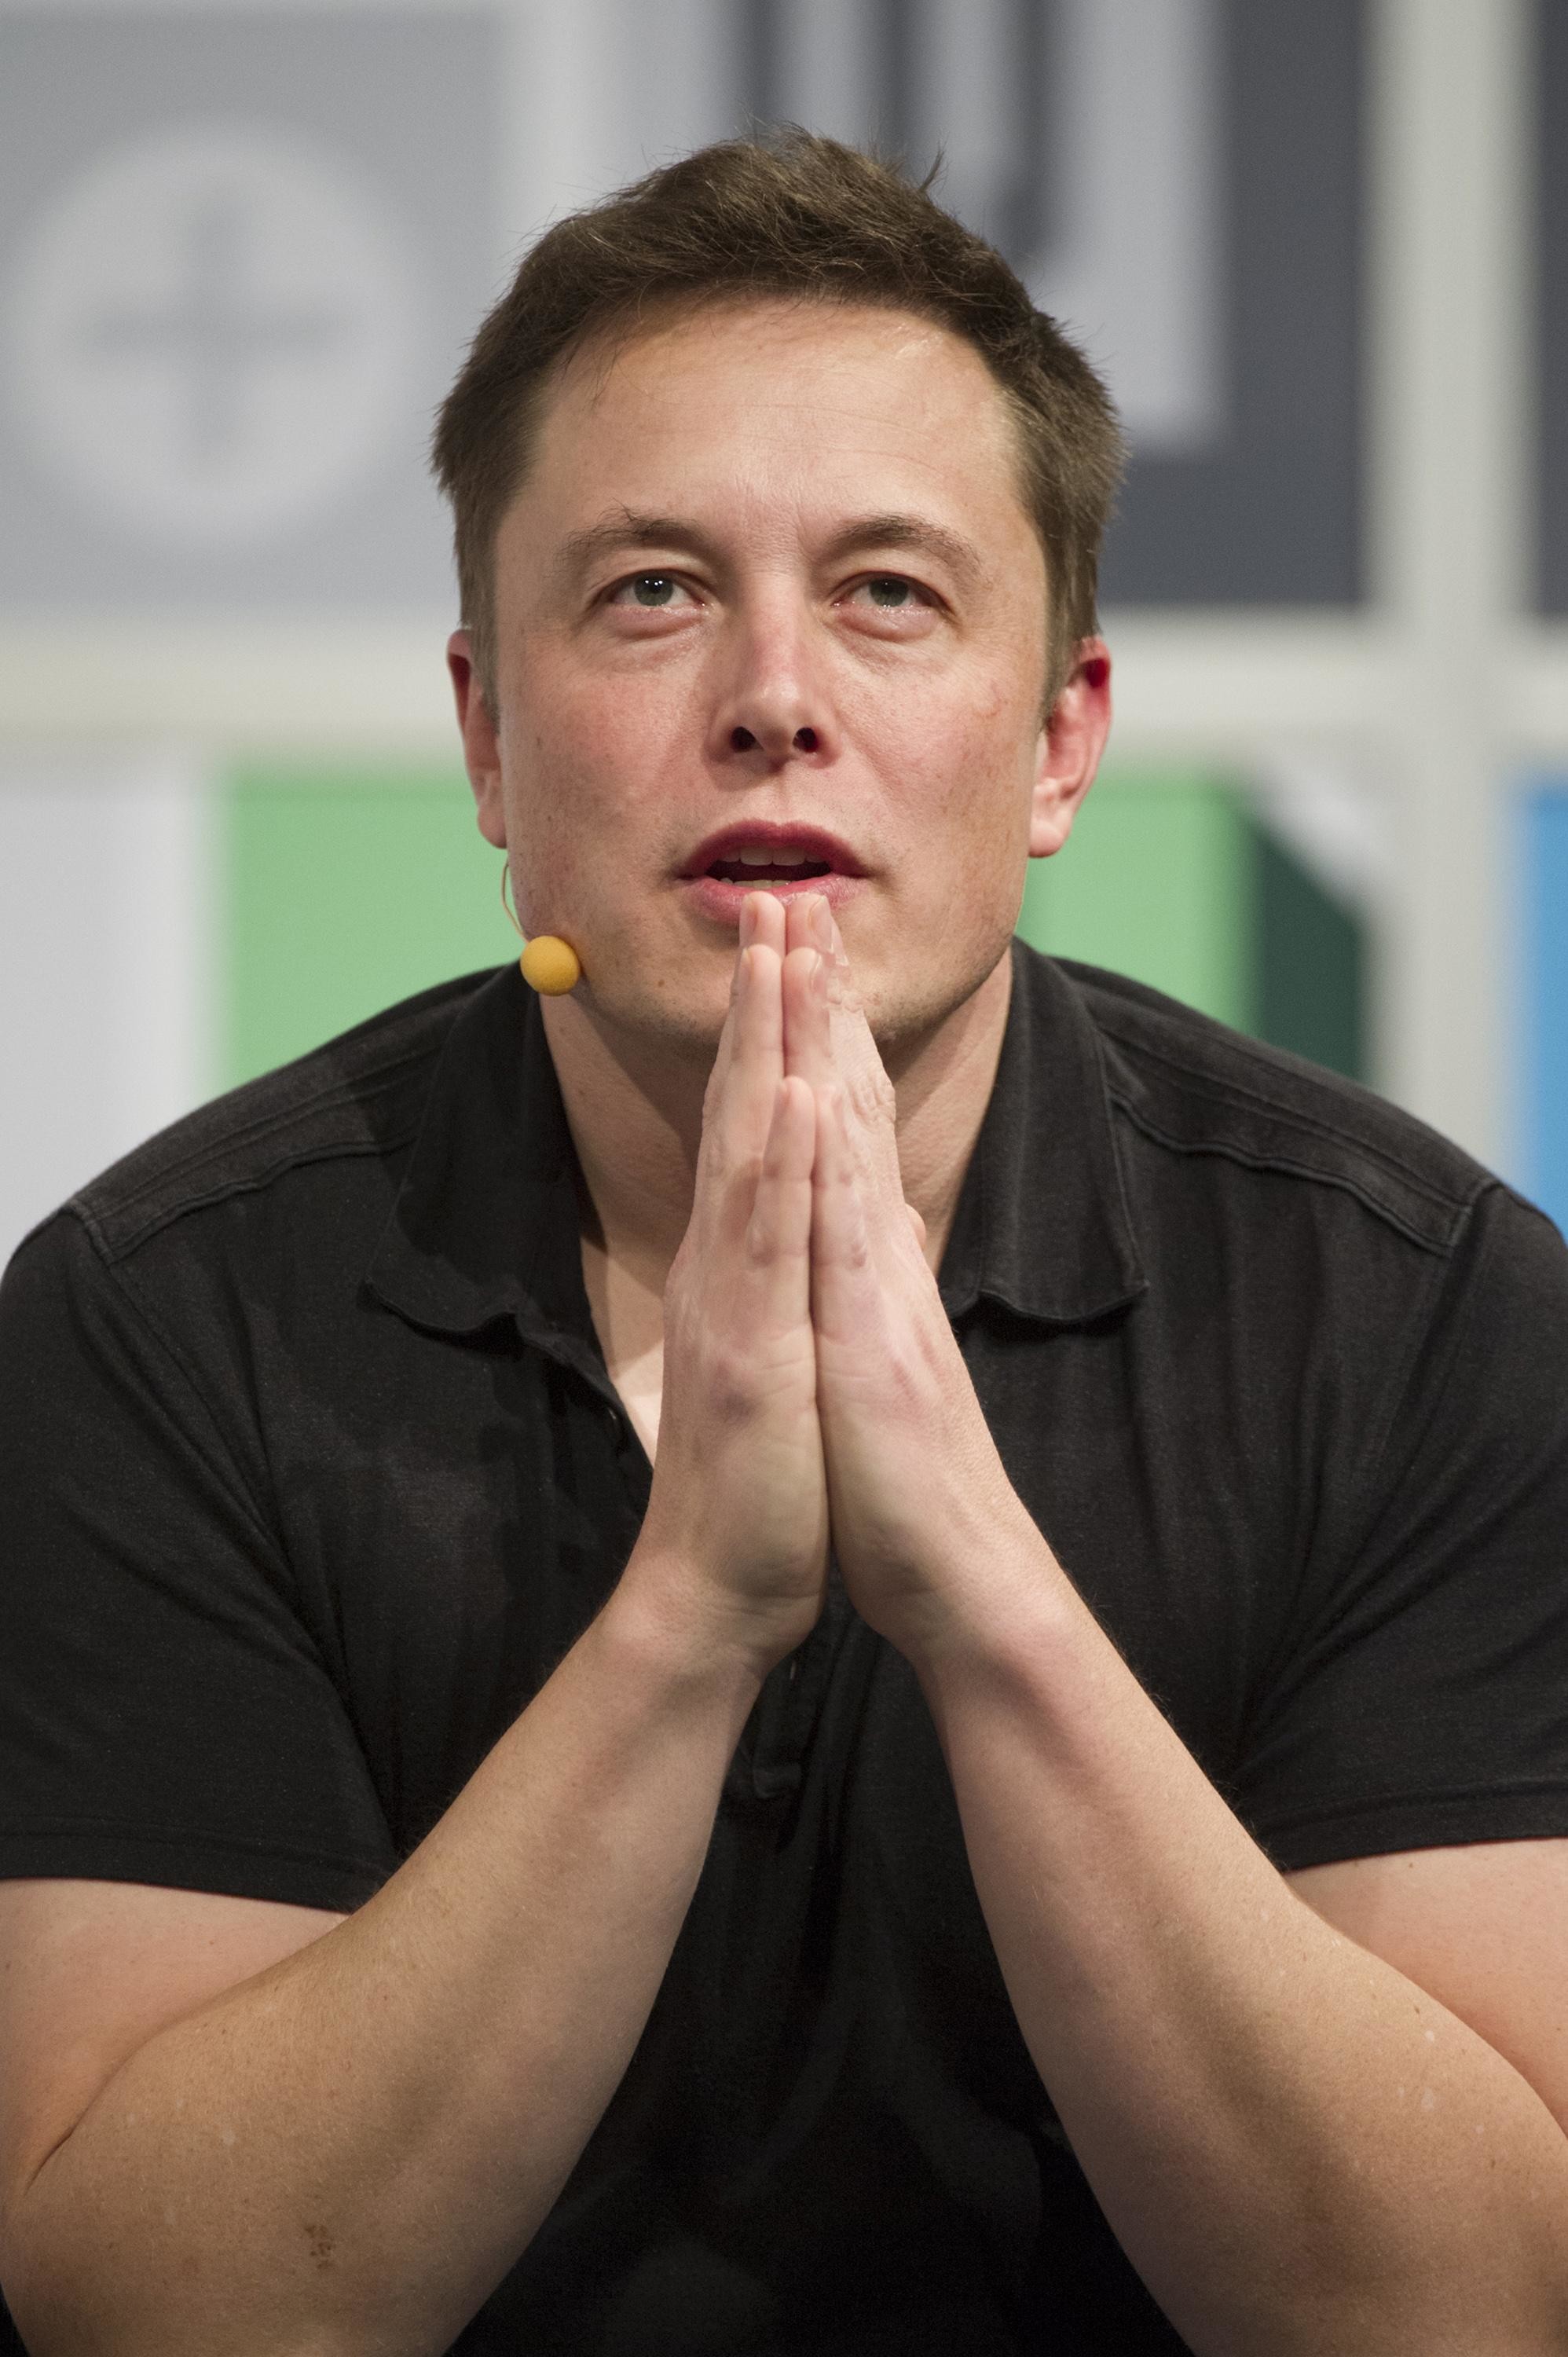 Tesla's Musk outlines vision for futuristic 'Hyperloop' transport system